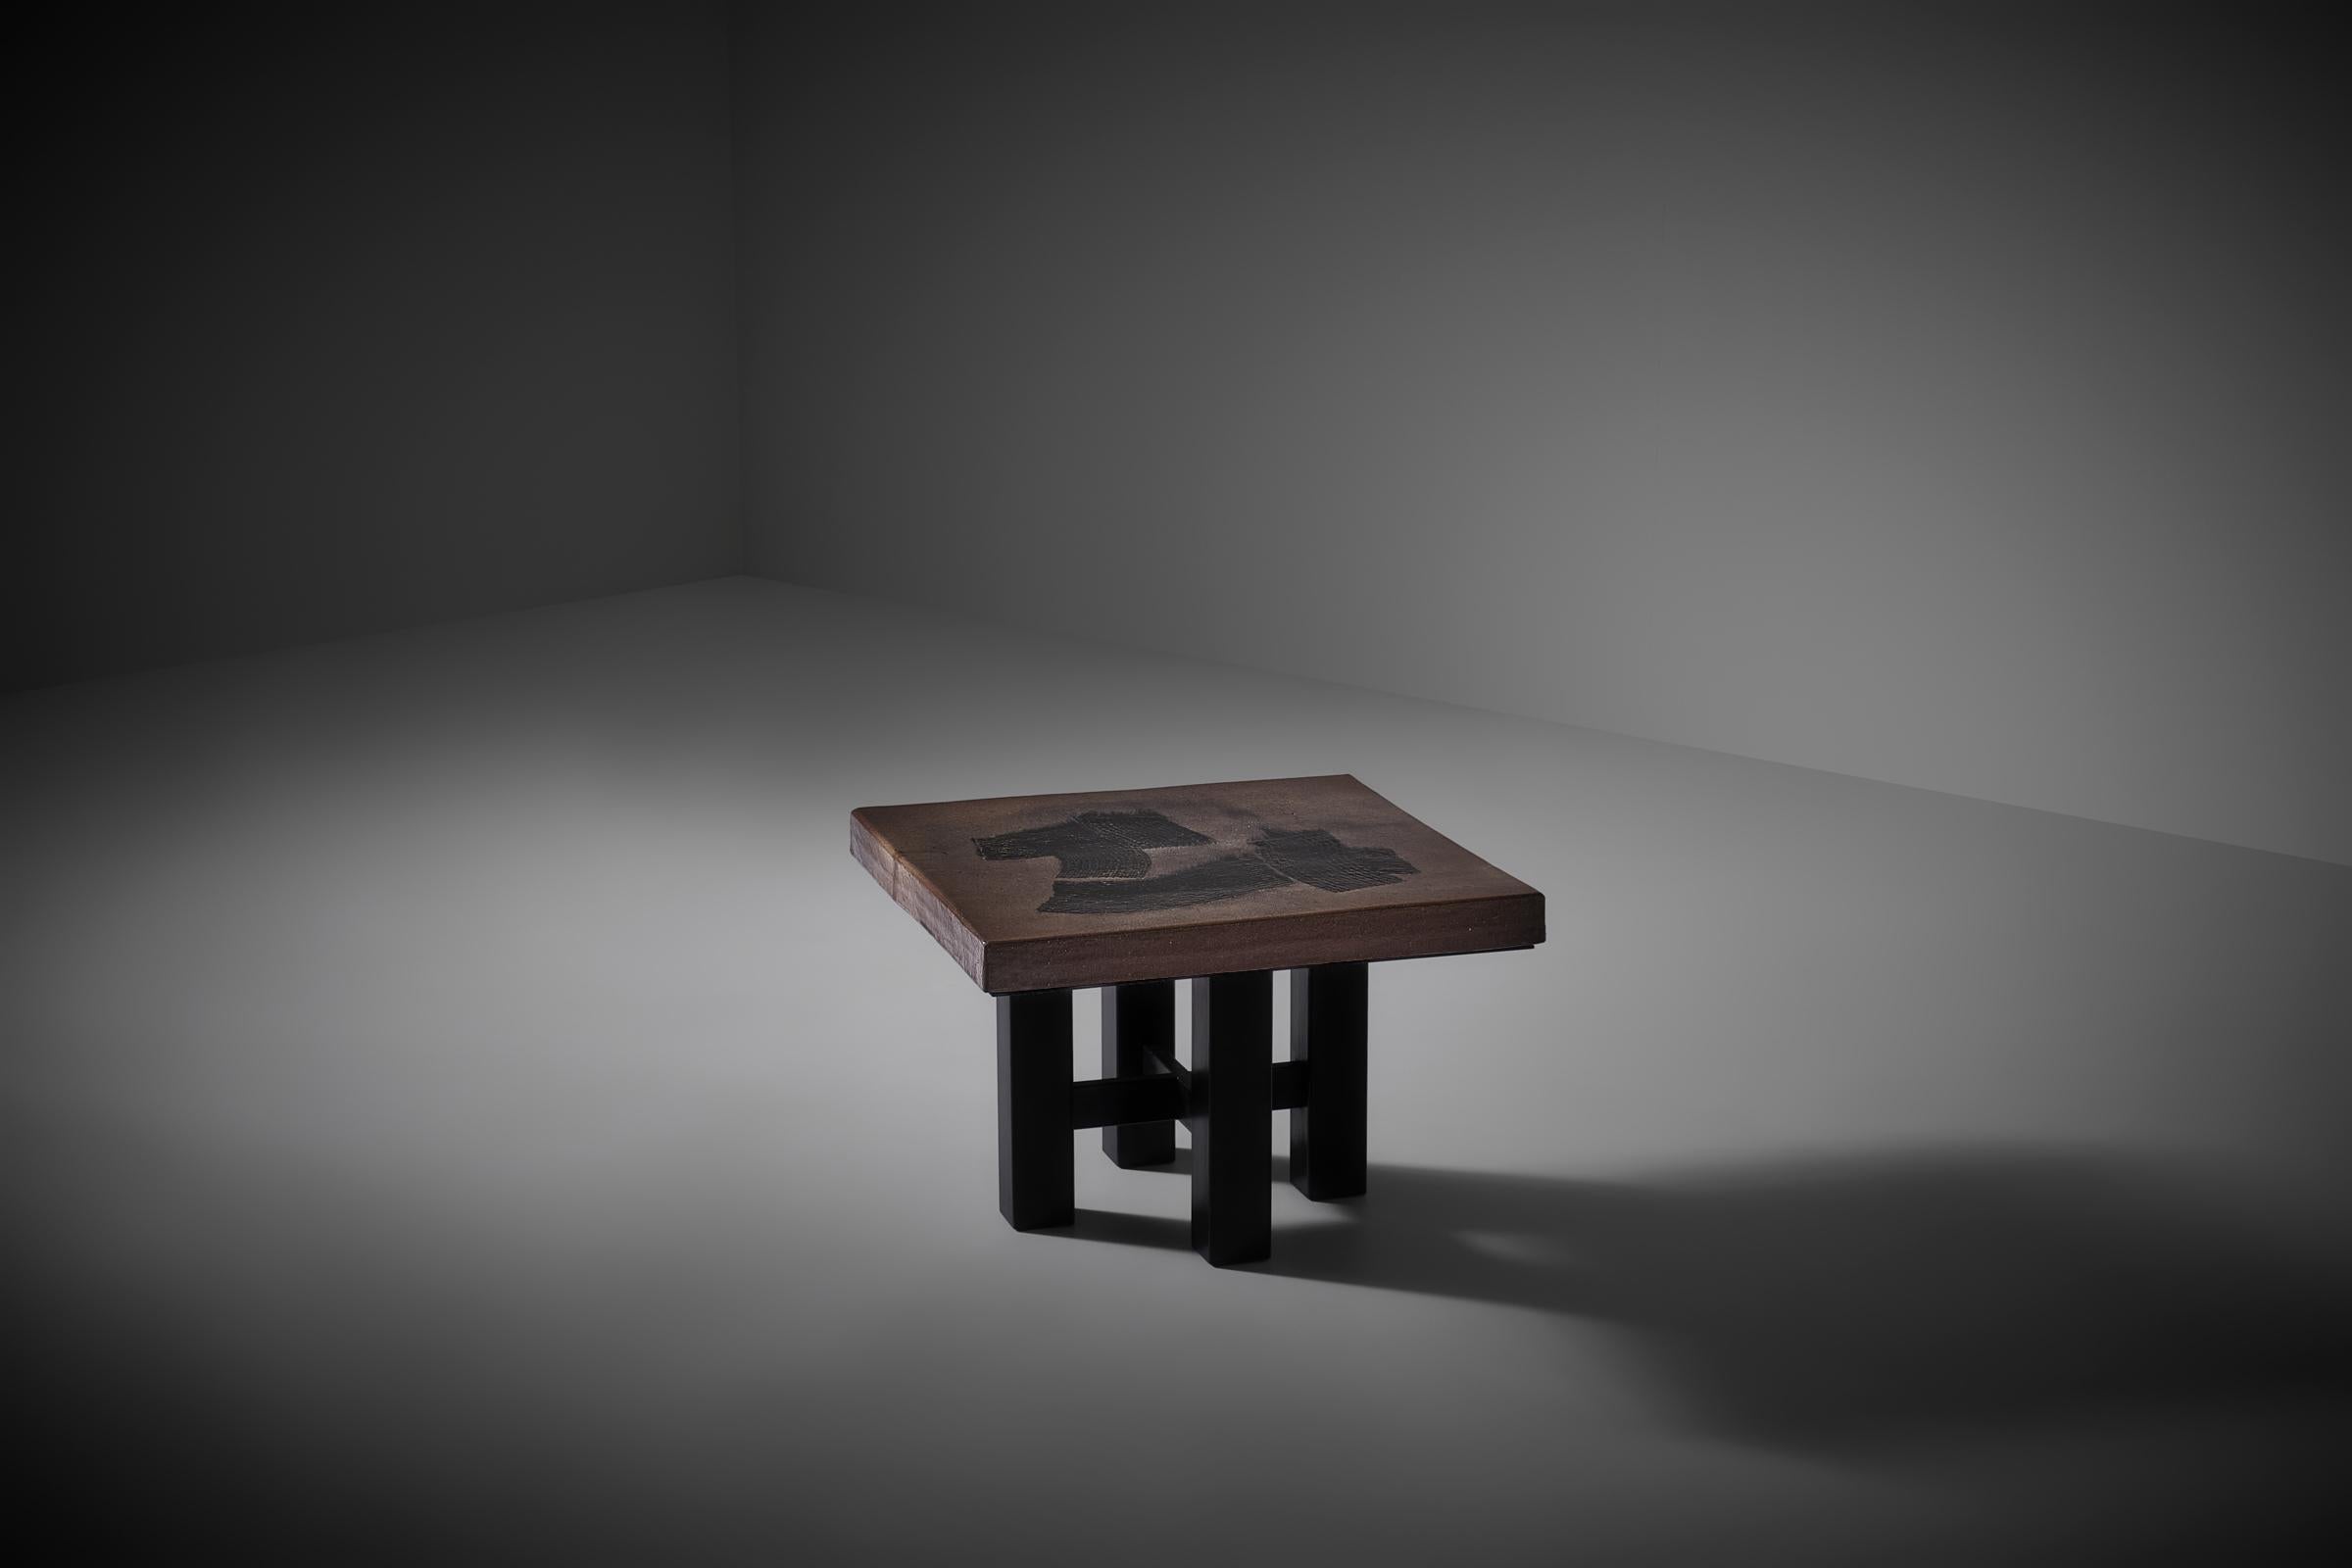 Table d'appoint carrée en céramique avec motif calligraphique, France, années 1970. Magnifique table bien proportionnée présentant un motif calligraphique noir sur un plateau en céramique émaillée de couleur brun foncé/taupe sur une base